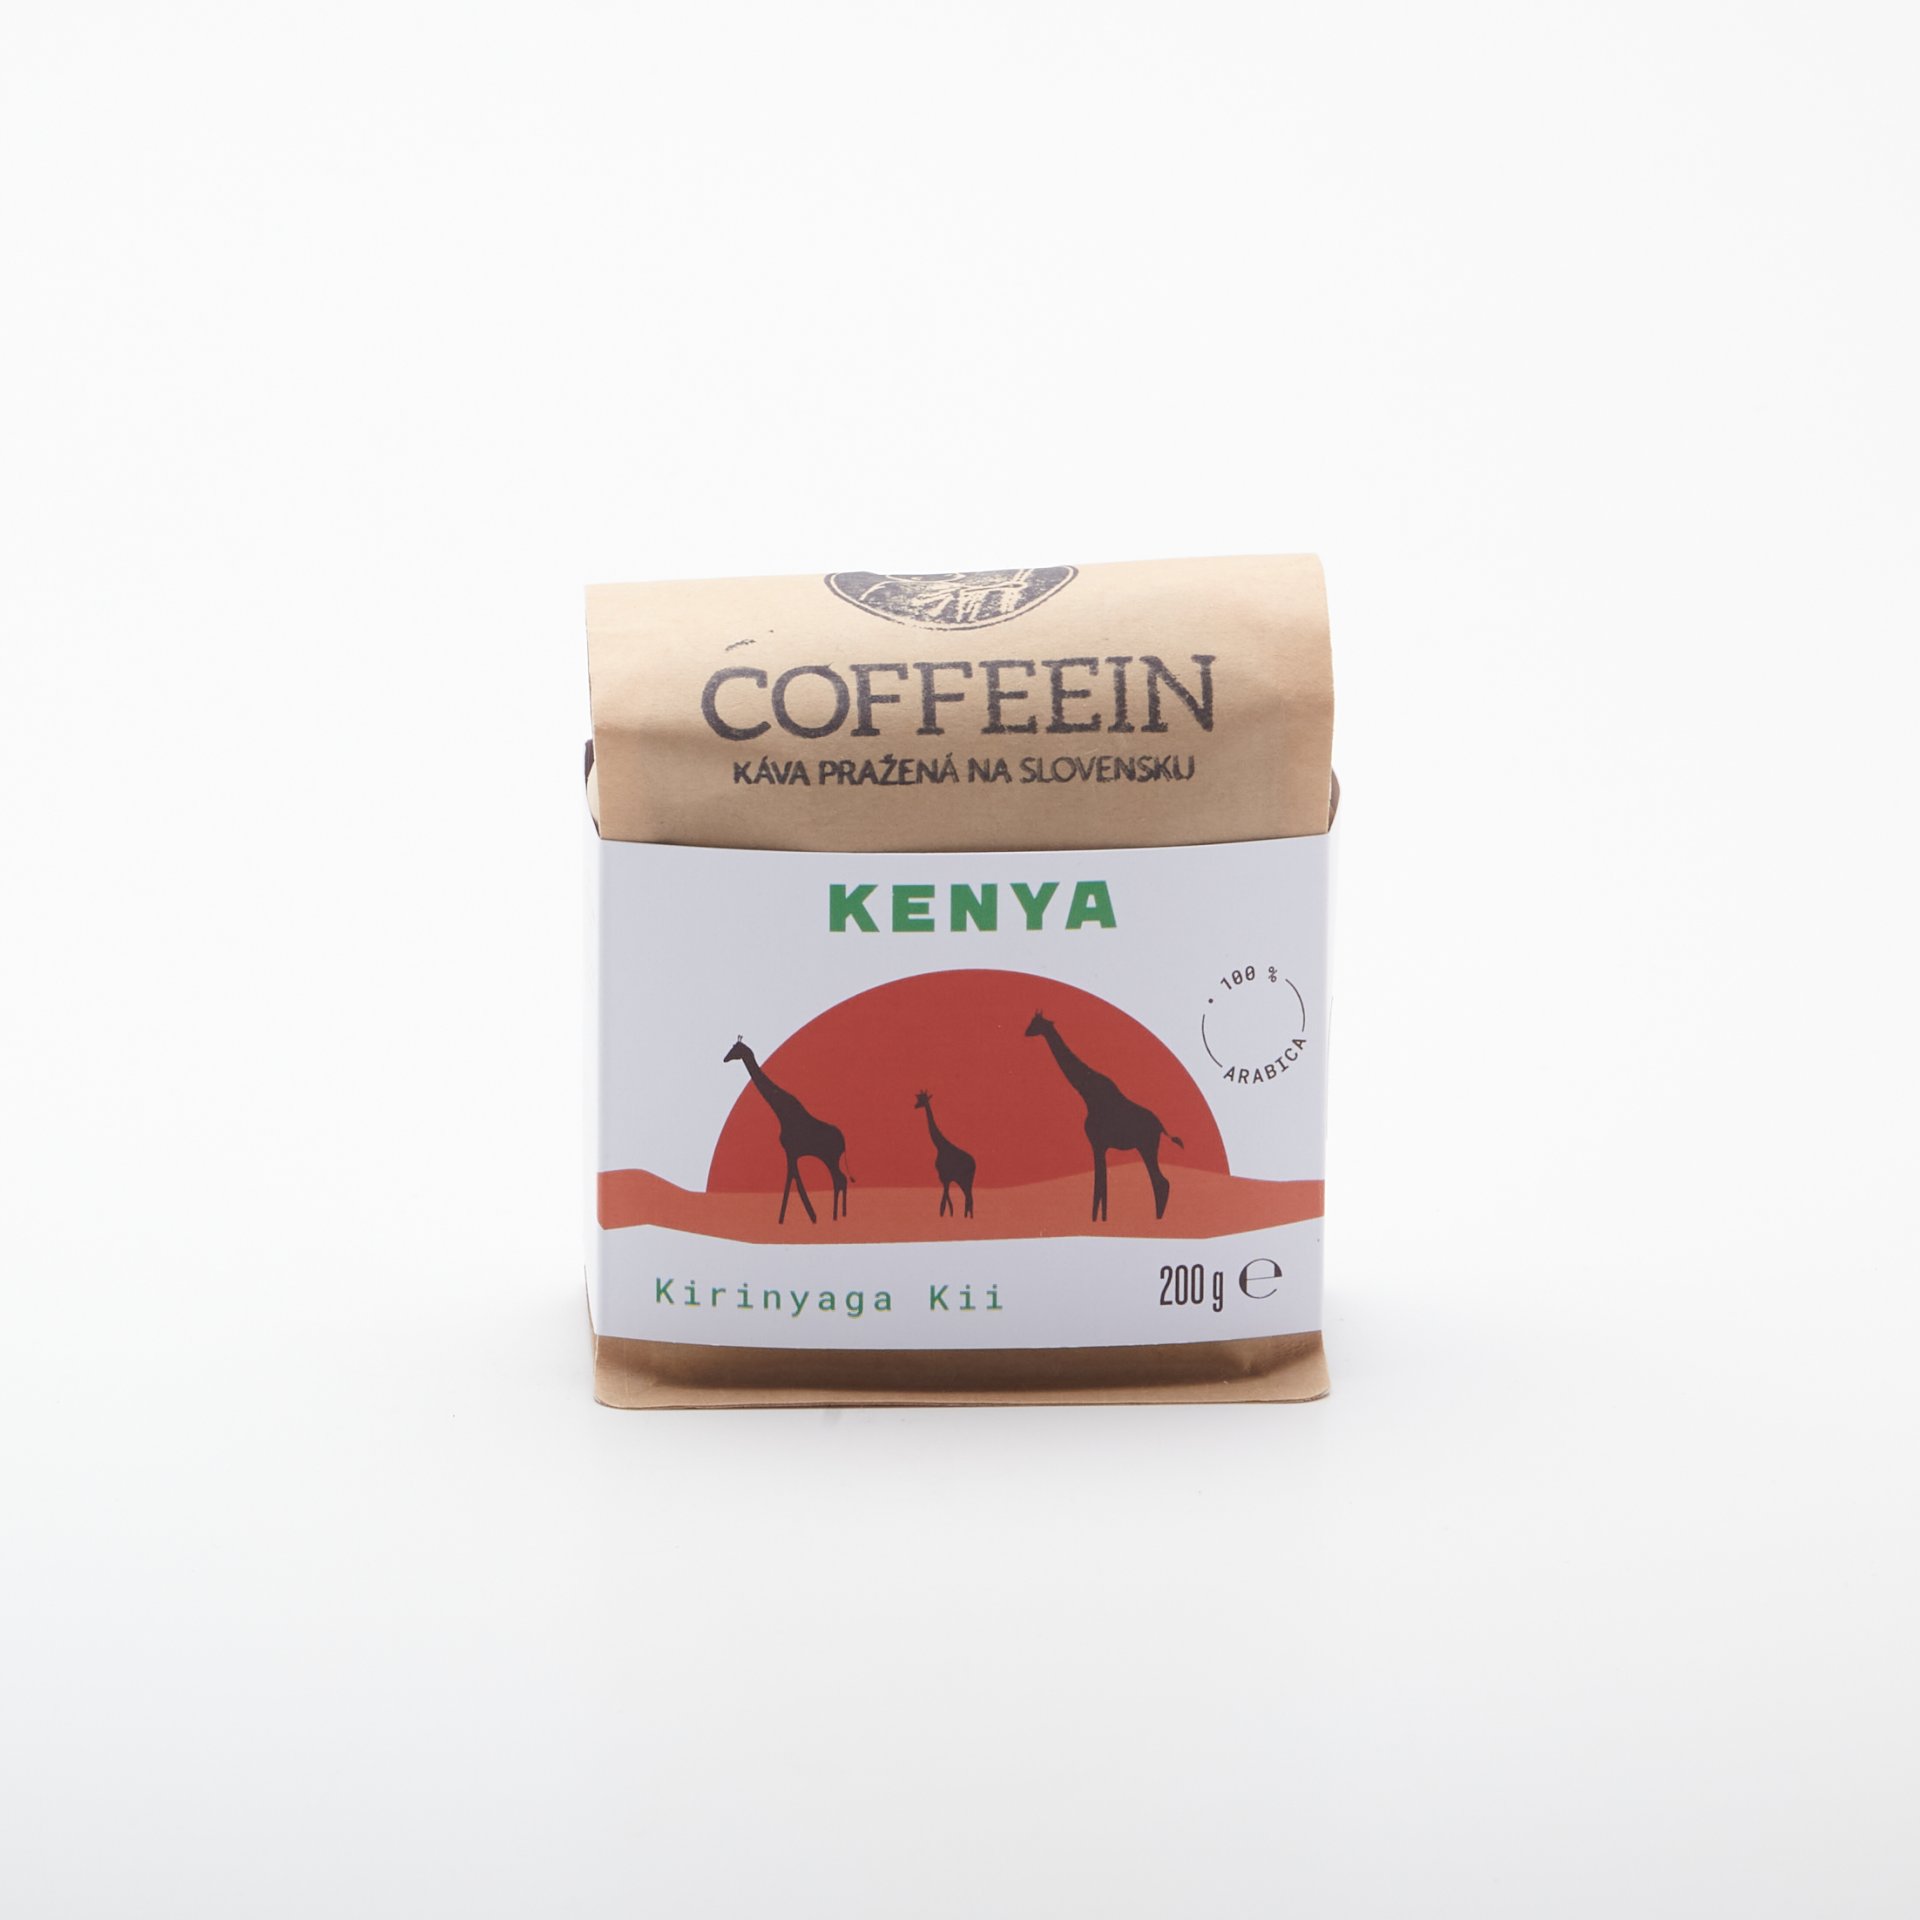 Coffeein Kenya Kirinyaga Kii 200g